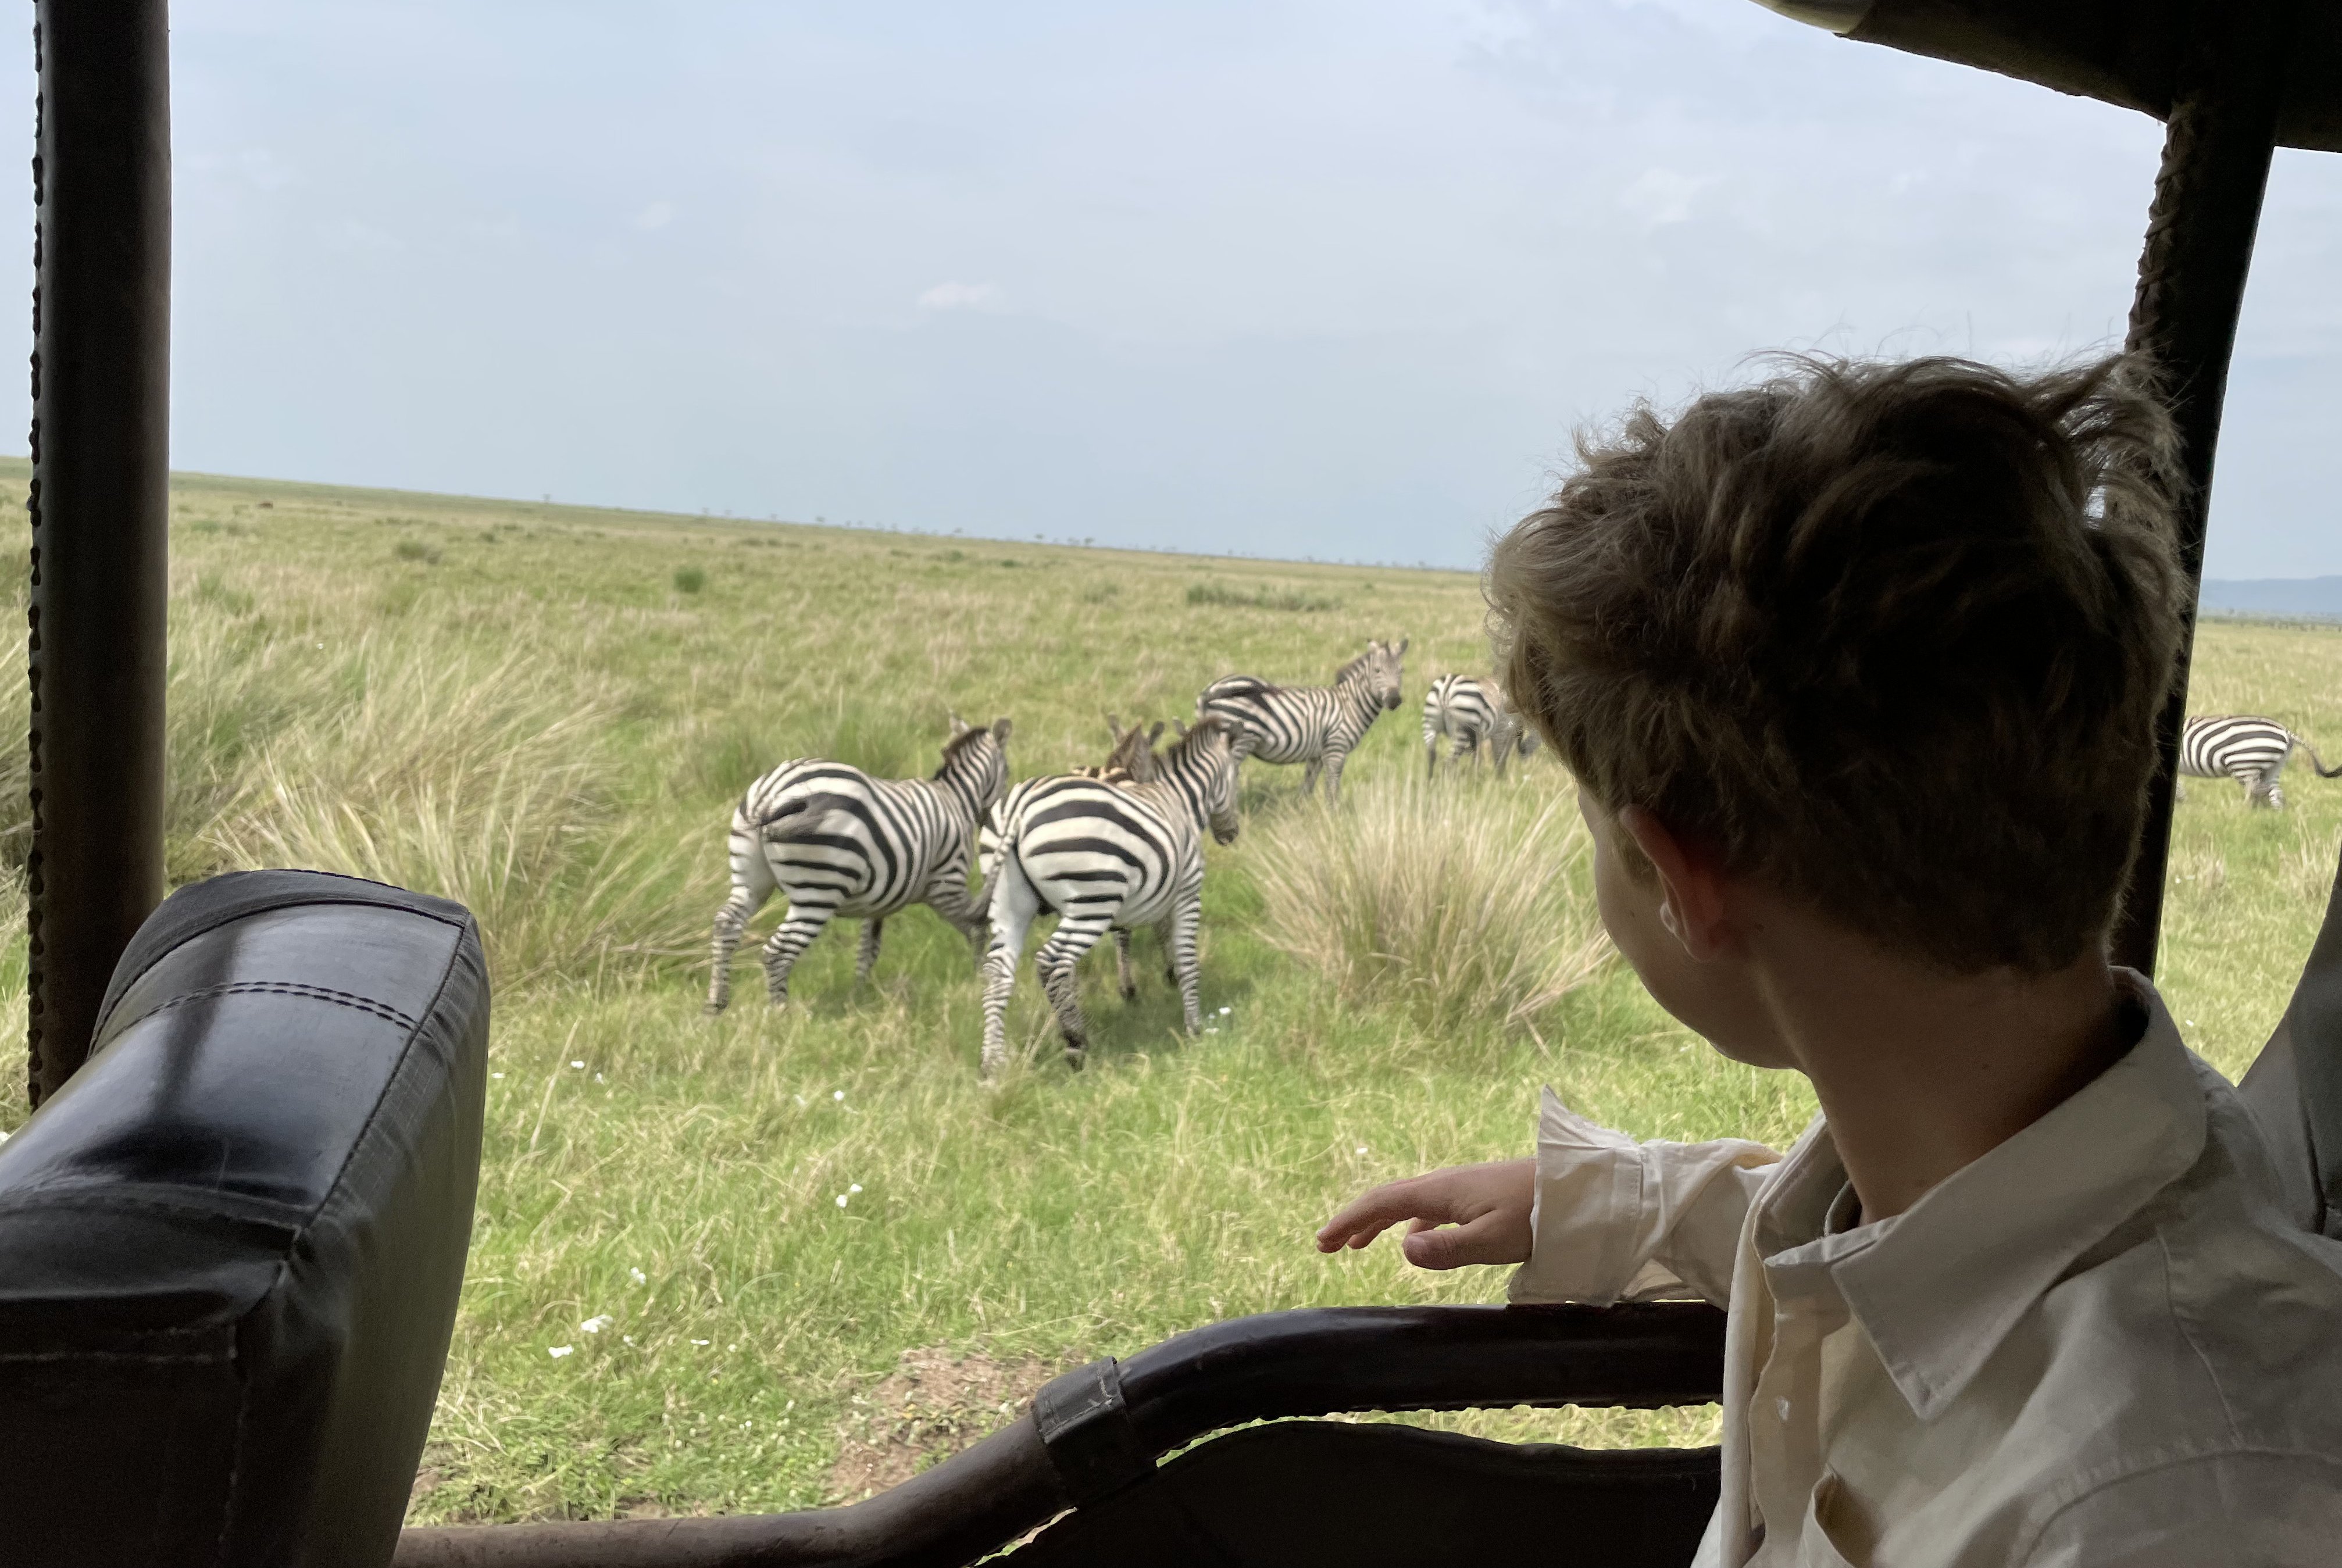 Fernreiseziele mit Kindern im Sommer - Tipps für Fernreisen im Sommer mit Kindern - Zebras auf der Pirschfahrt